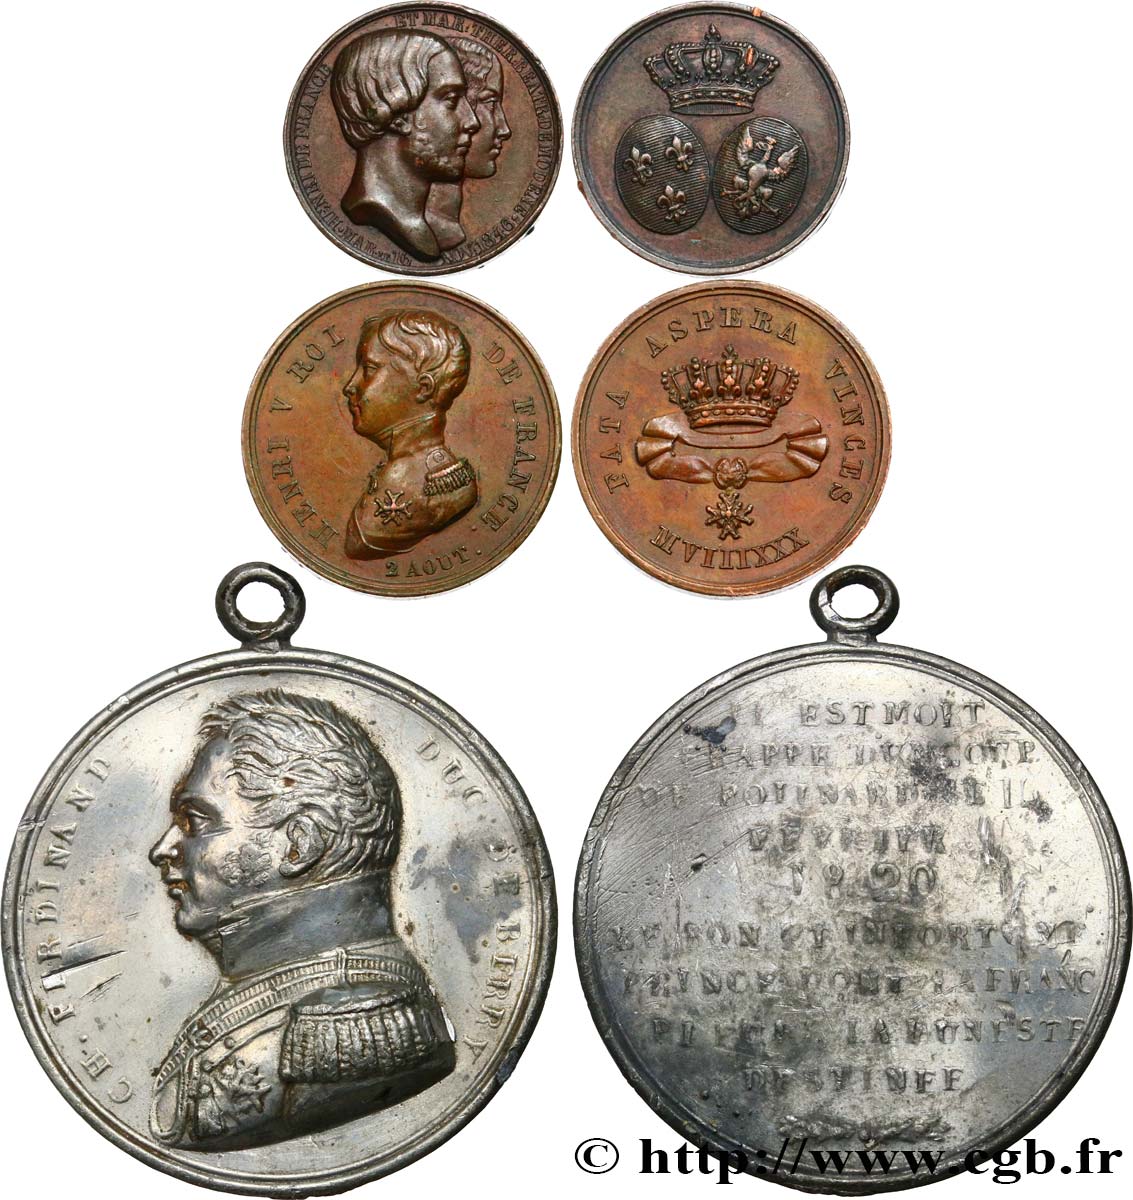 HENRI V COMTE DE CHAMBORD Lot de 3 médailles relatives à la vie d’Henri V, comte de Chambord SS